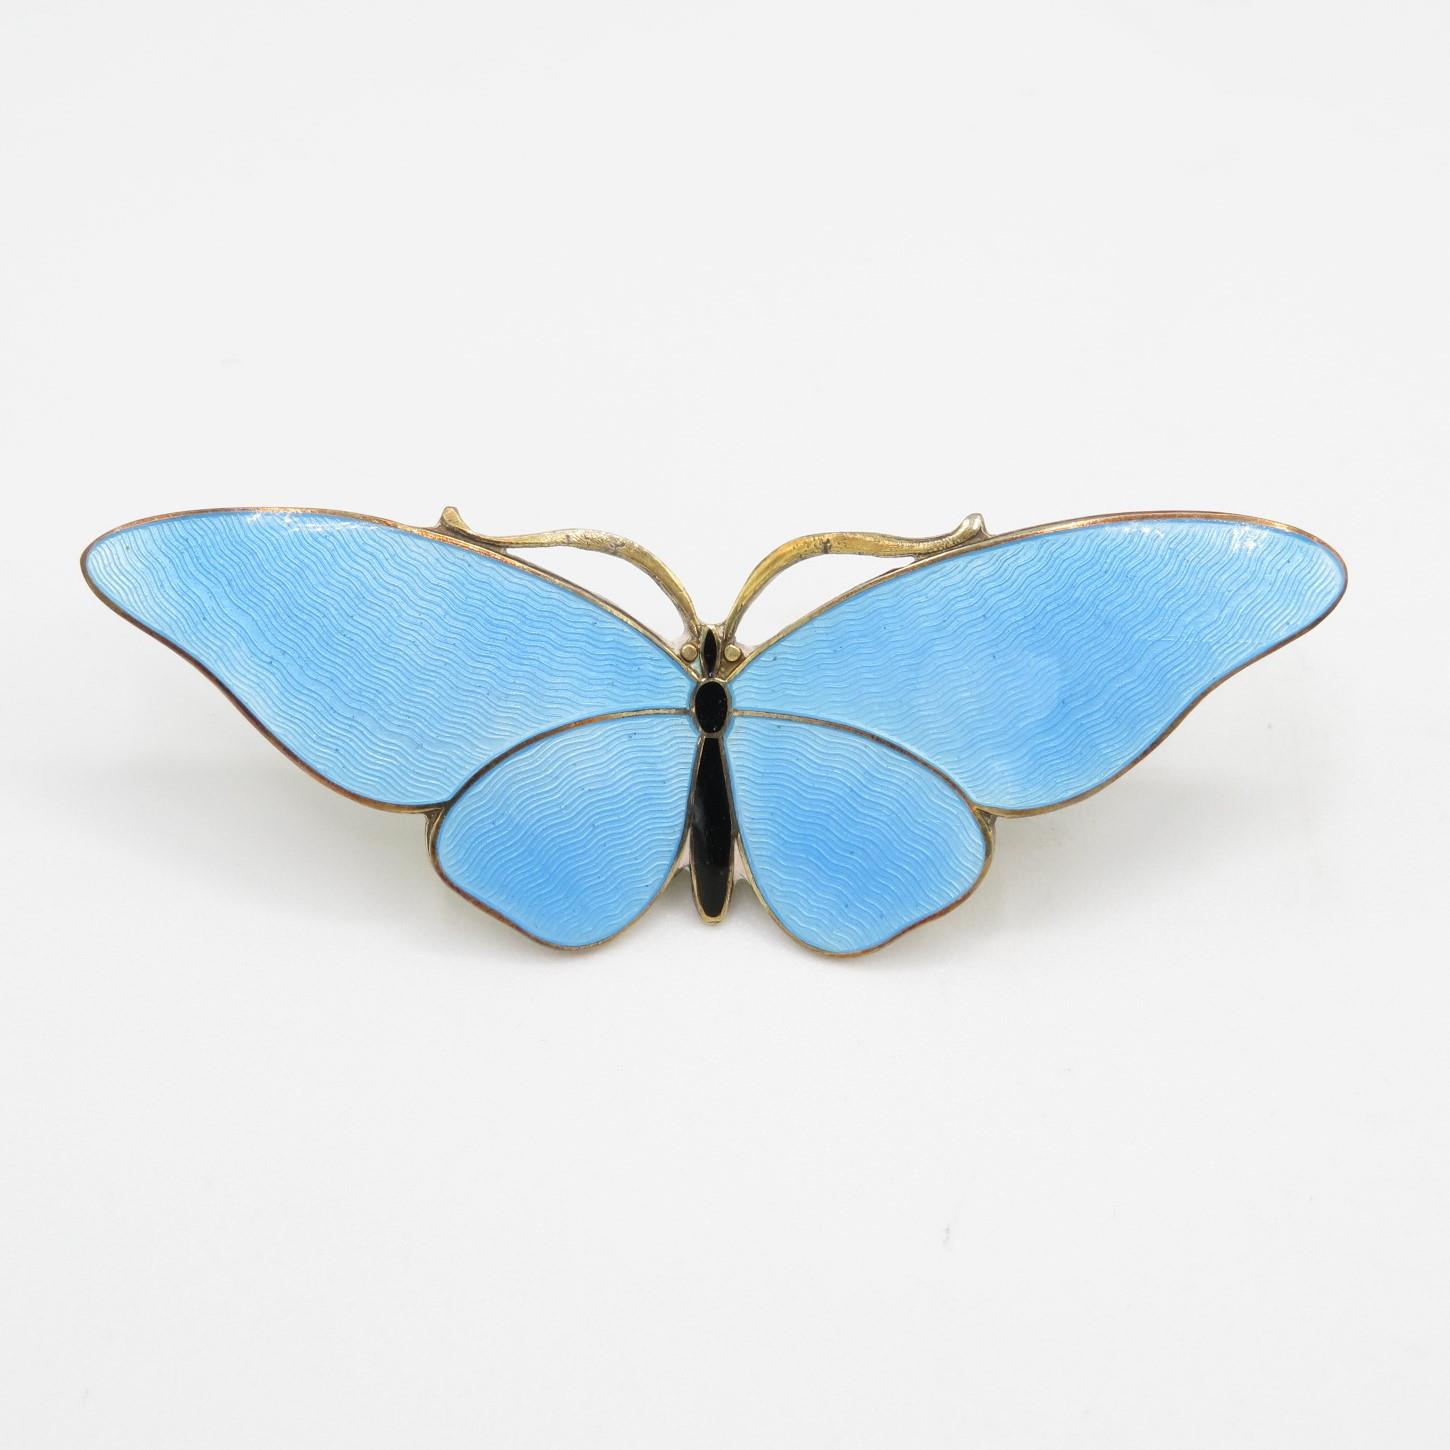 Silver enamel butterfly brooch by Gustav Hellstrom (13g) - Image 5 of 13